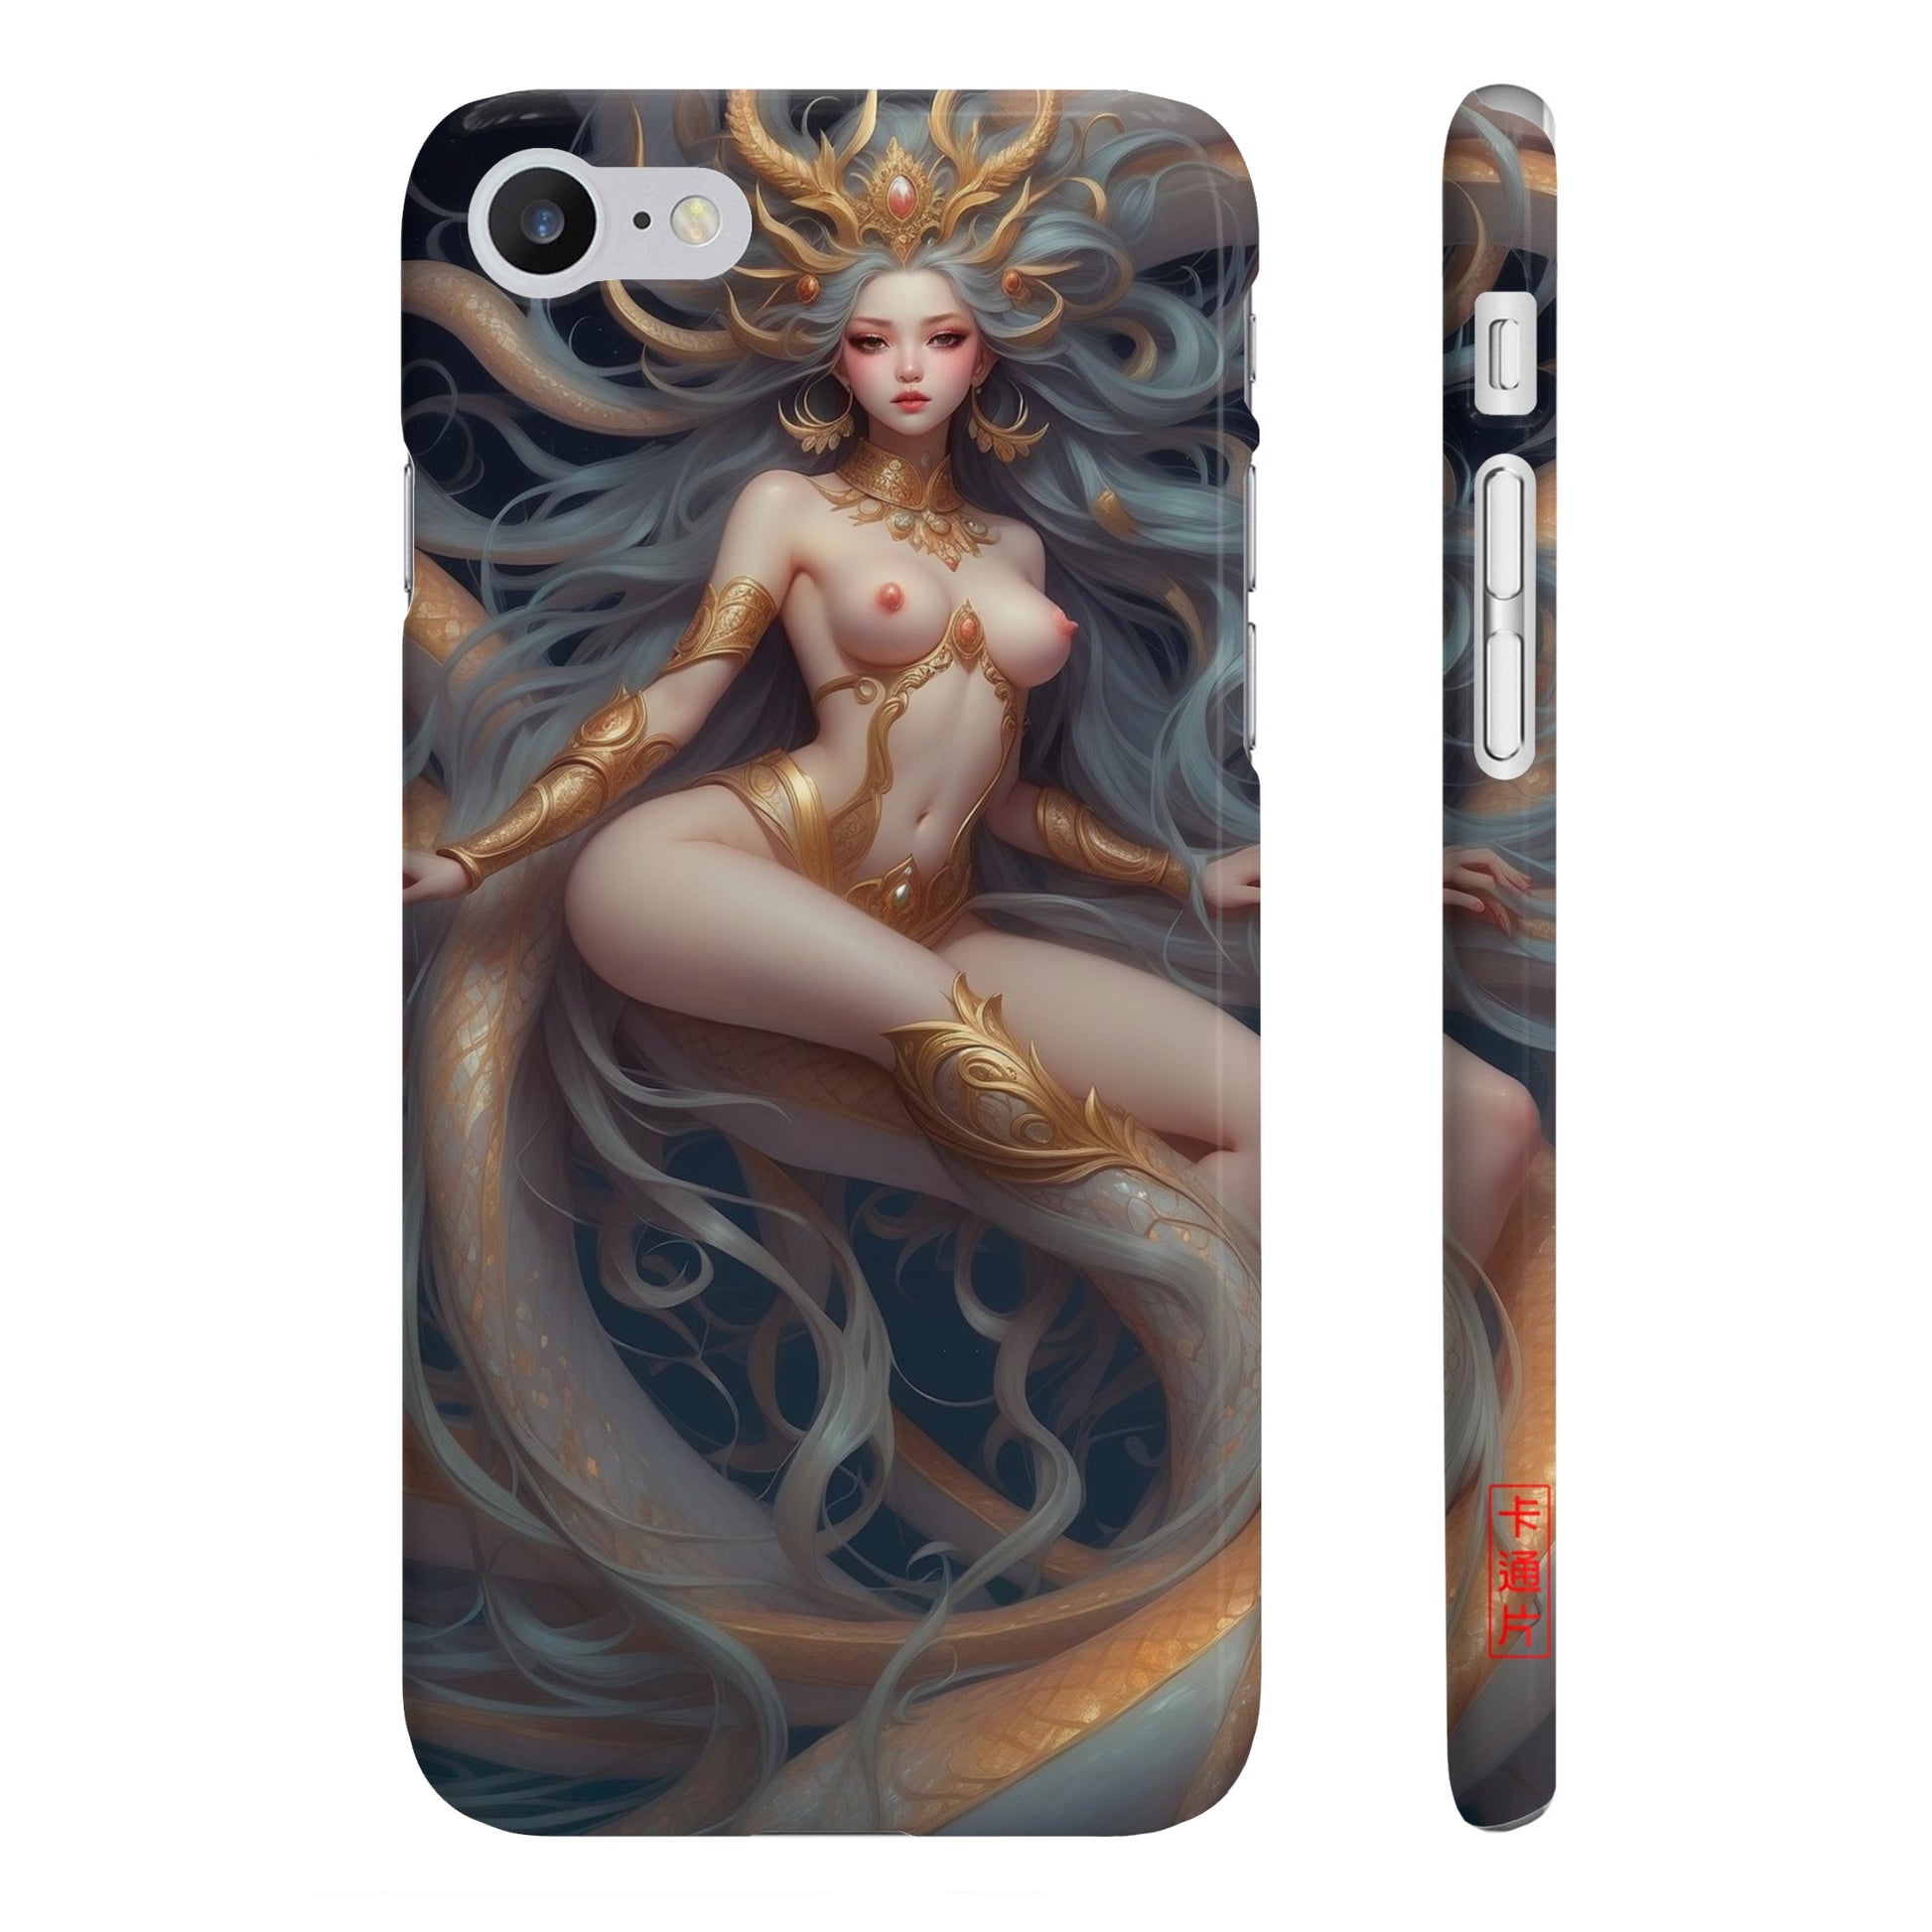 Kǎtōng Piàn - Mermaid Collection - 042 - Slim Phone Cases Printify